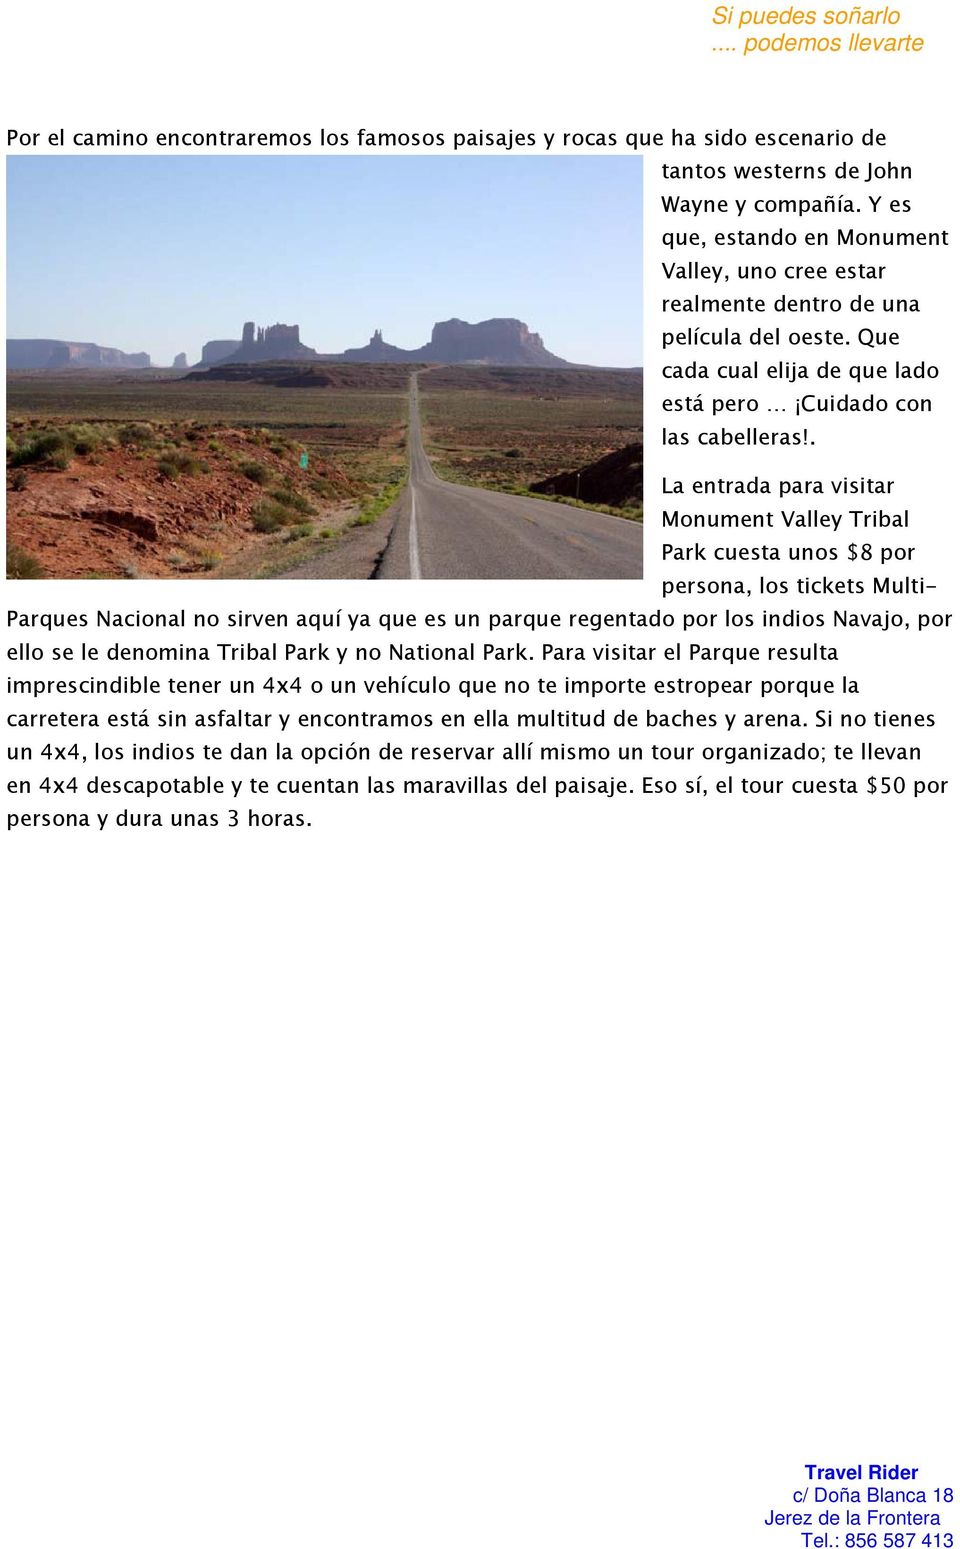 . La entrada para visitar Monument Valley Tribal Park cuesta unos $8 por persona, los tickets Multi- Parques Nacional no sirven aquí ya que es un parque regentado por los indios Navajo, por ello se